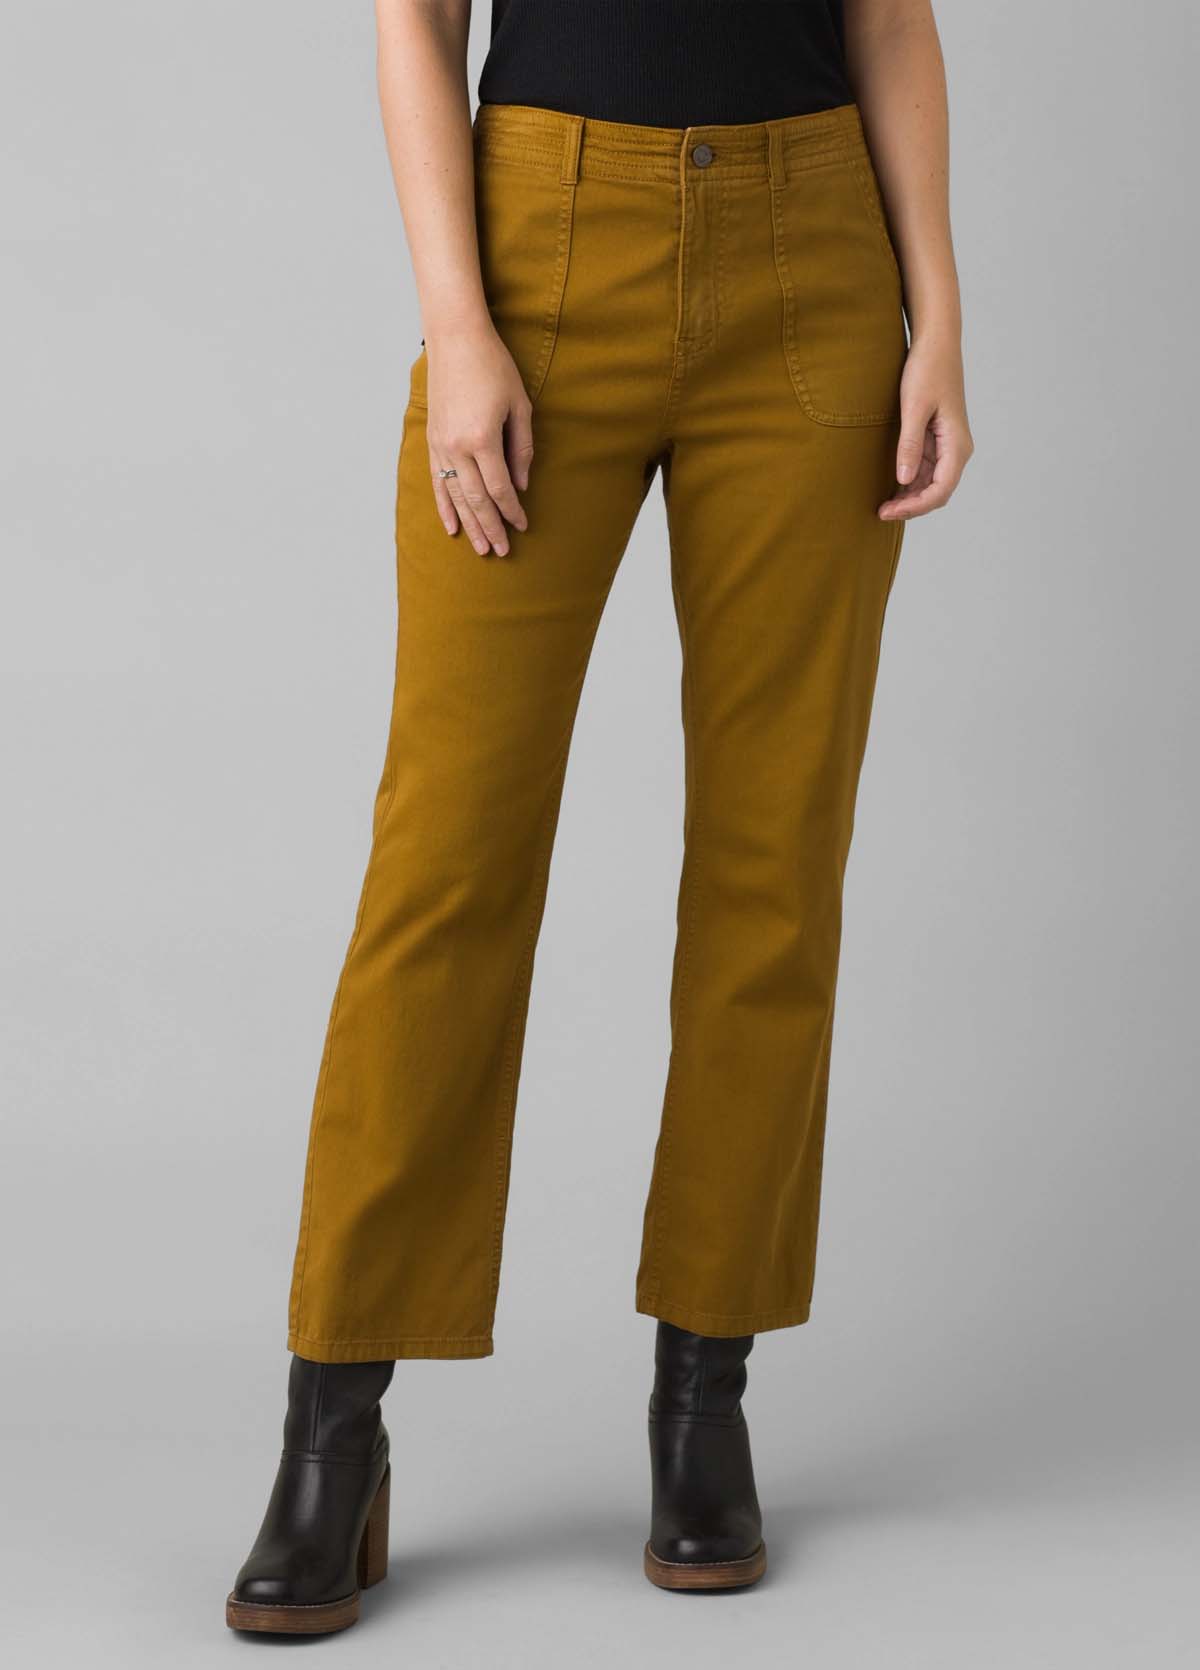 Bae City Womens Mustard Pants Size Small | eBay